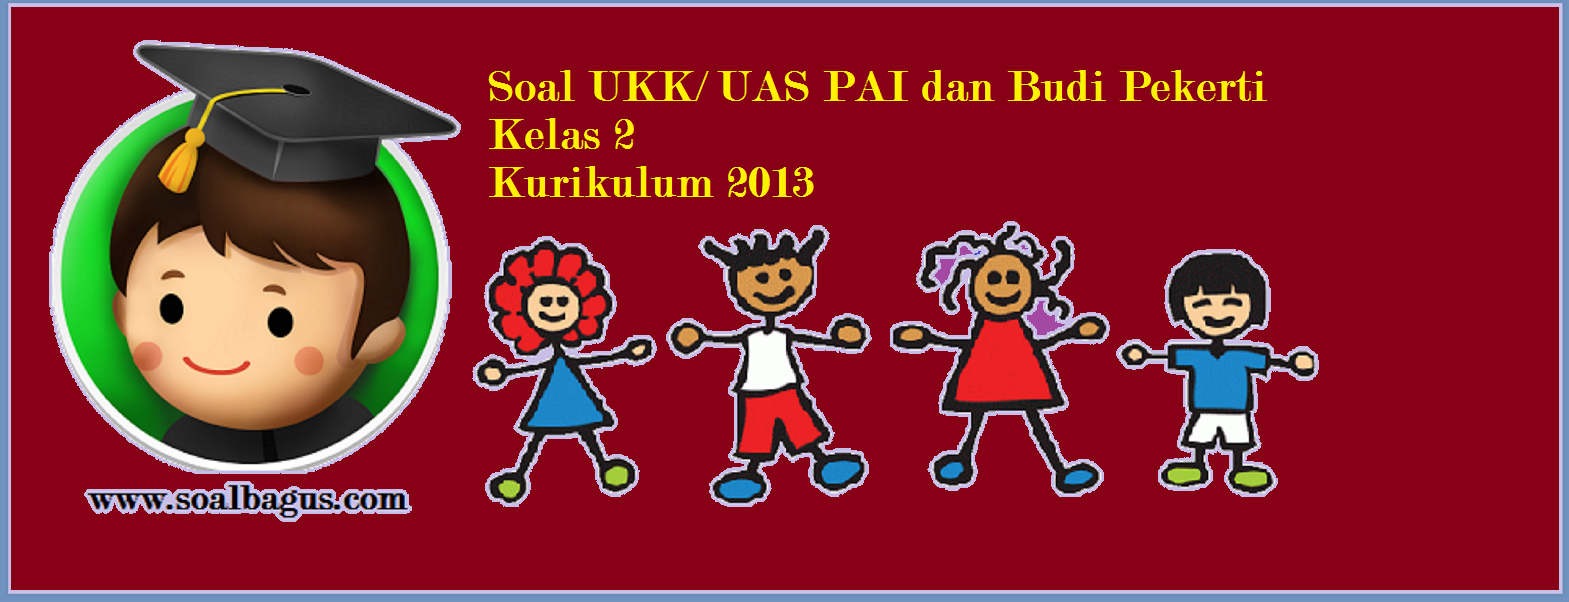 Soal UKK Kelas 2 PAI dan Budi Pekerti Kurikulum 2013 - soalbagus.com